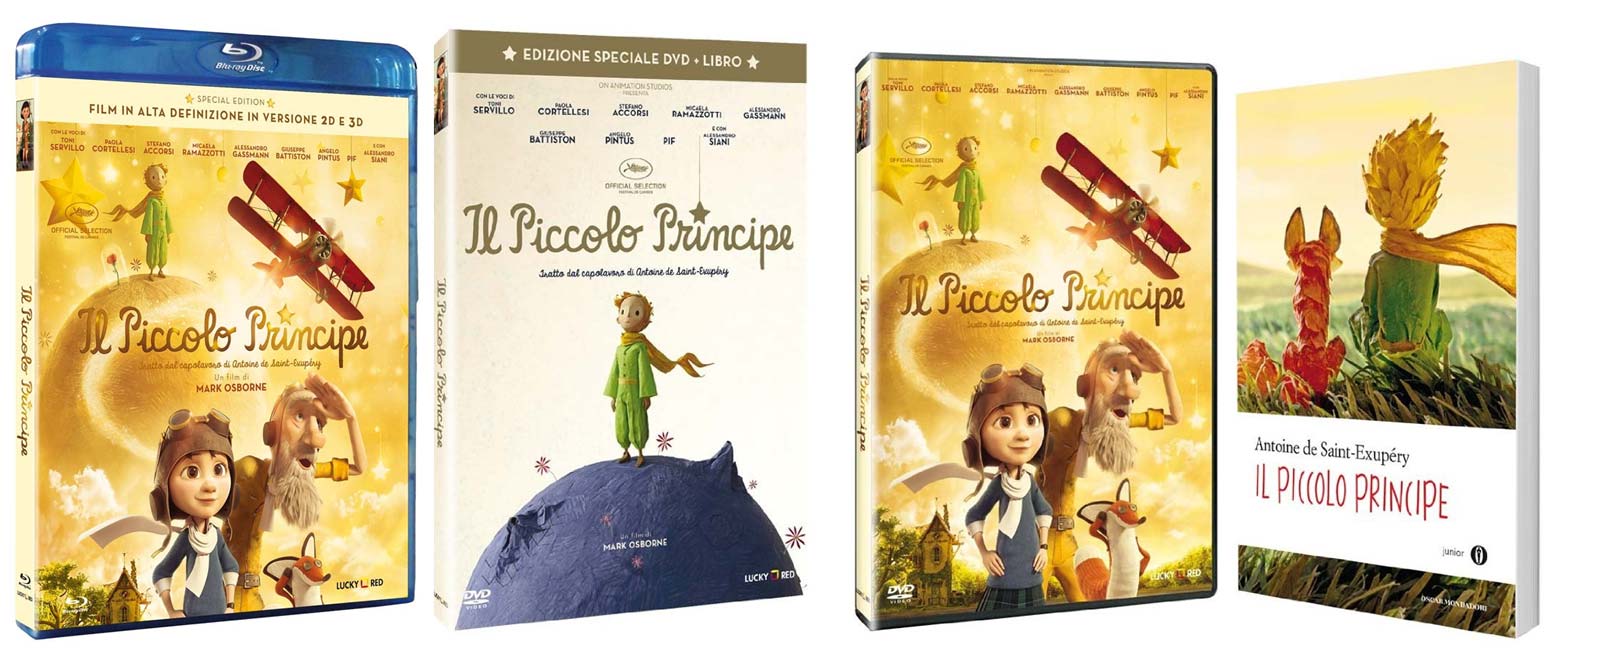 Il Piccolo Principe in DVD e Blu-ray 2D e 3D